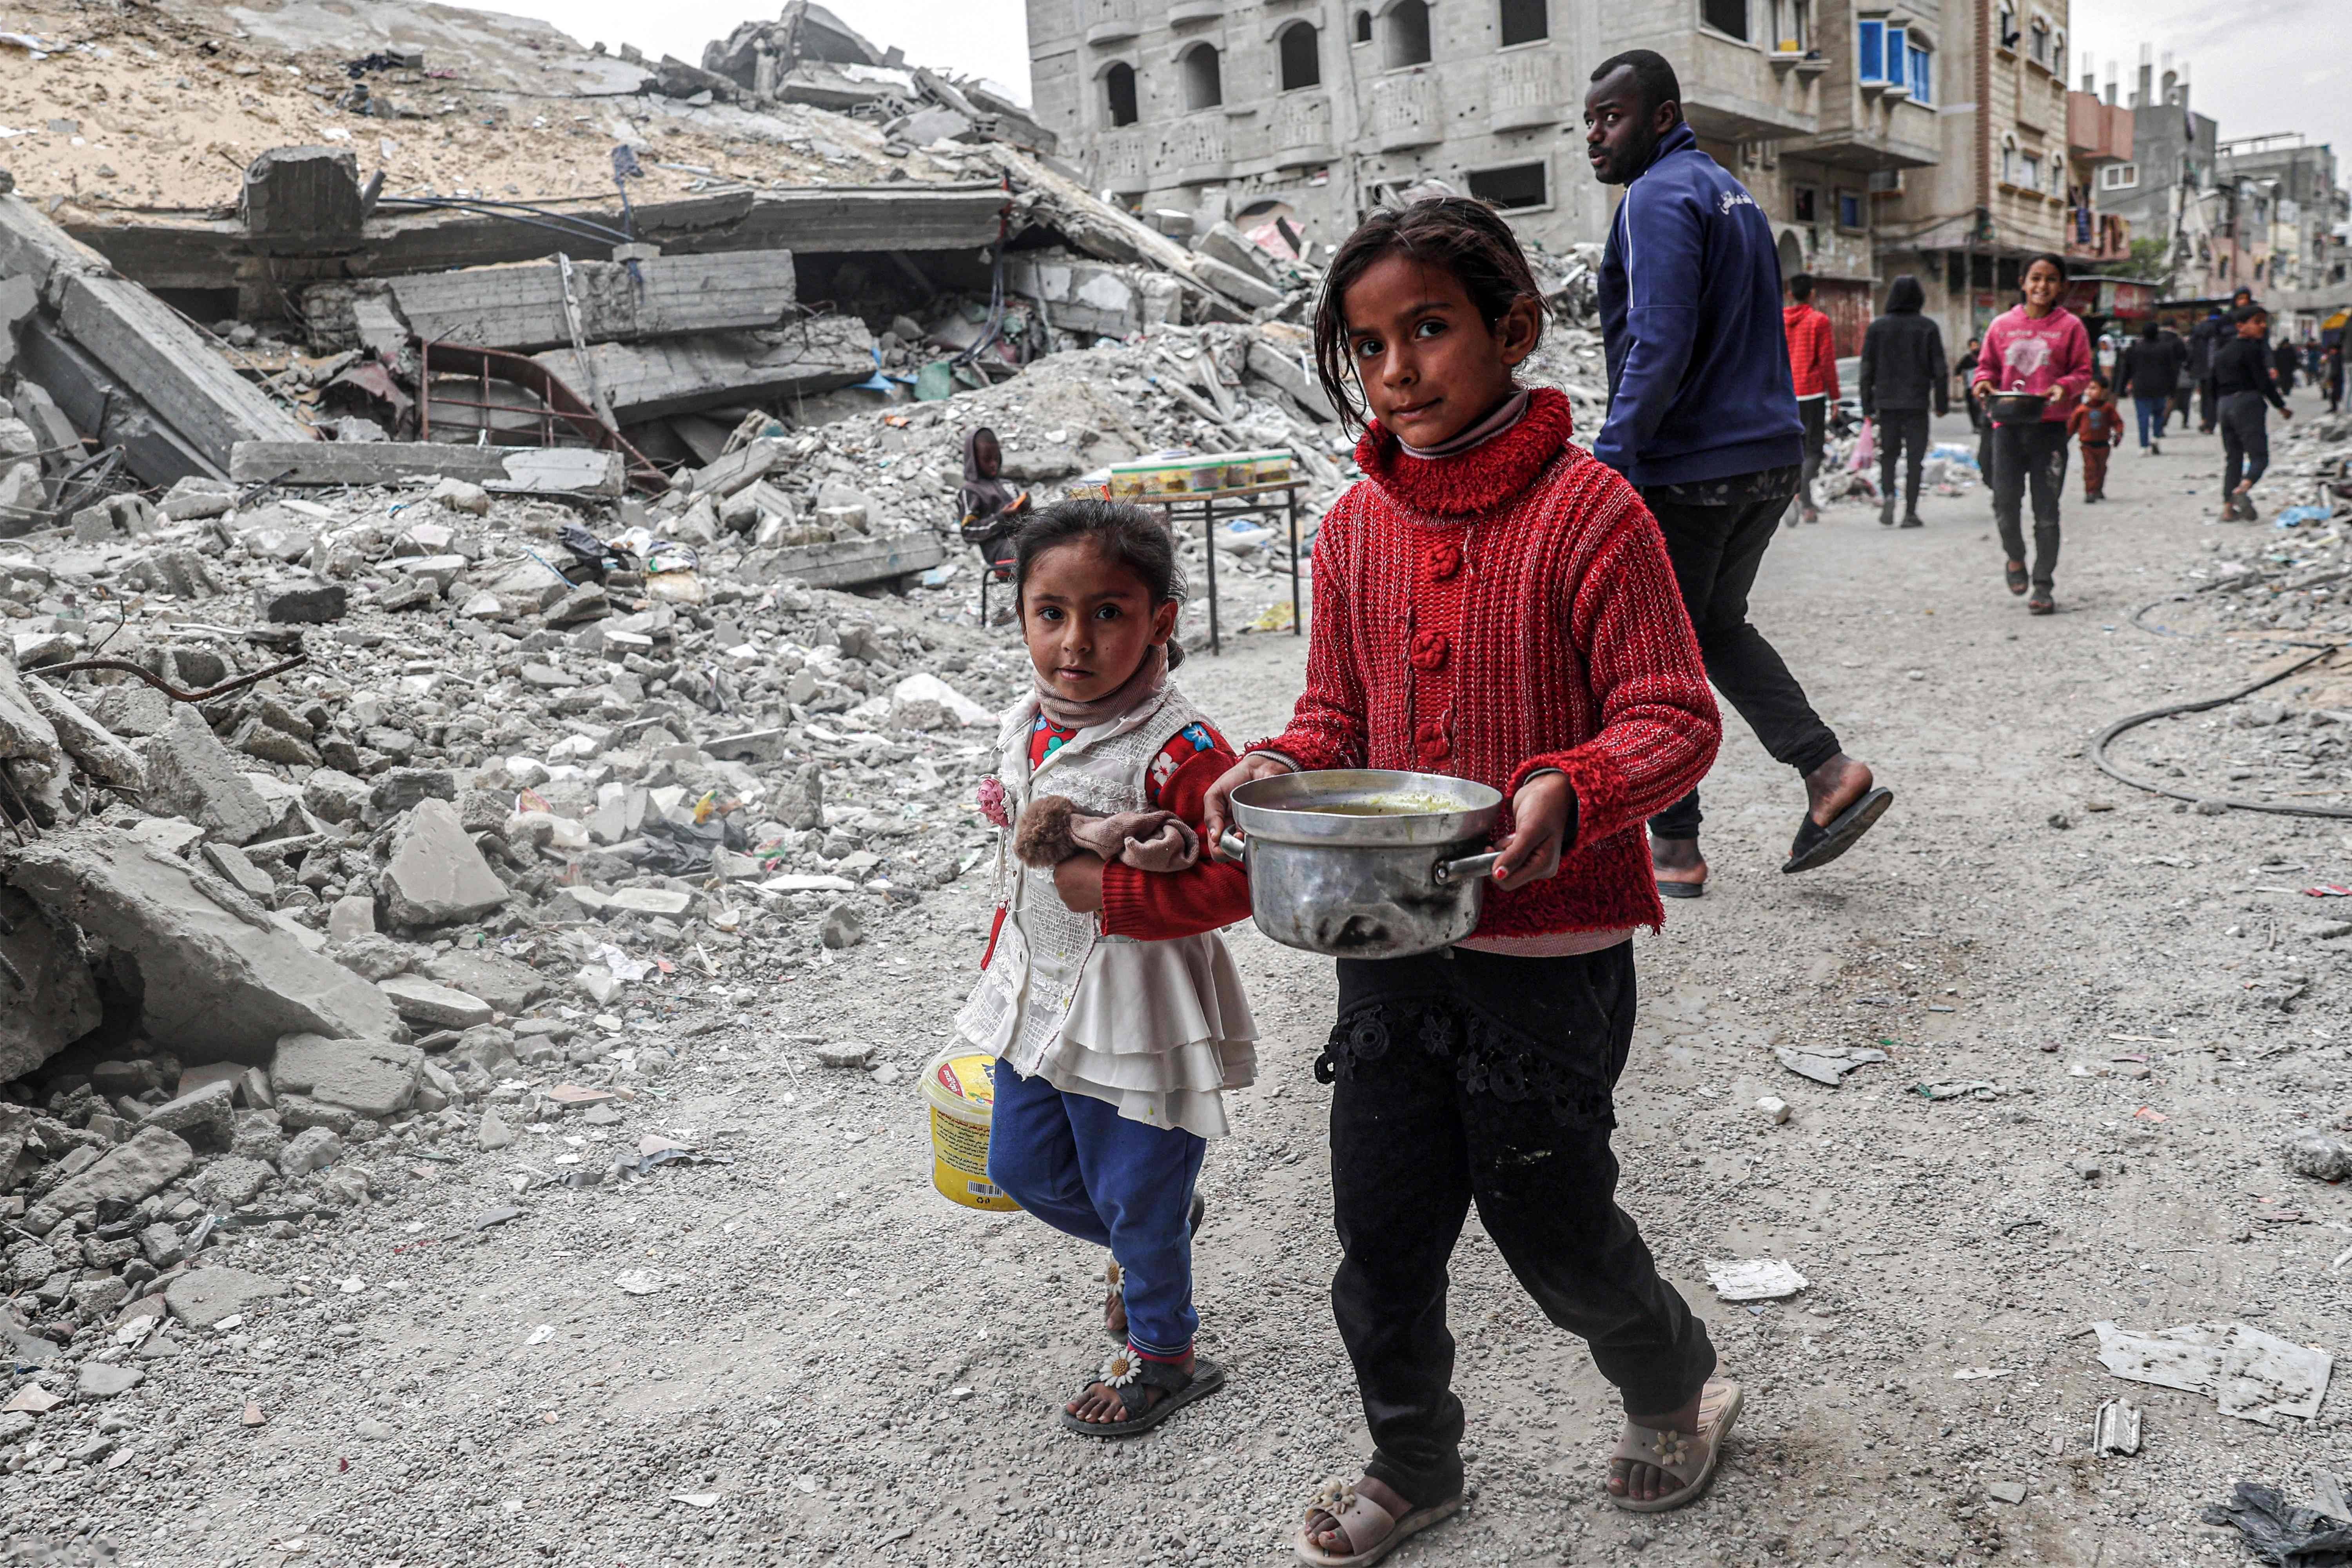 目前加沙北部三分之一的两岁以下儿童营养不良,饥荒迫在眉睫